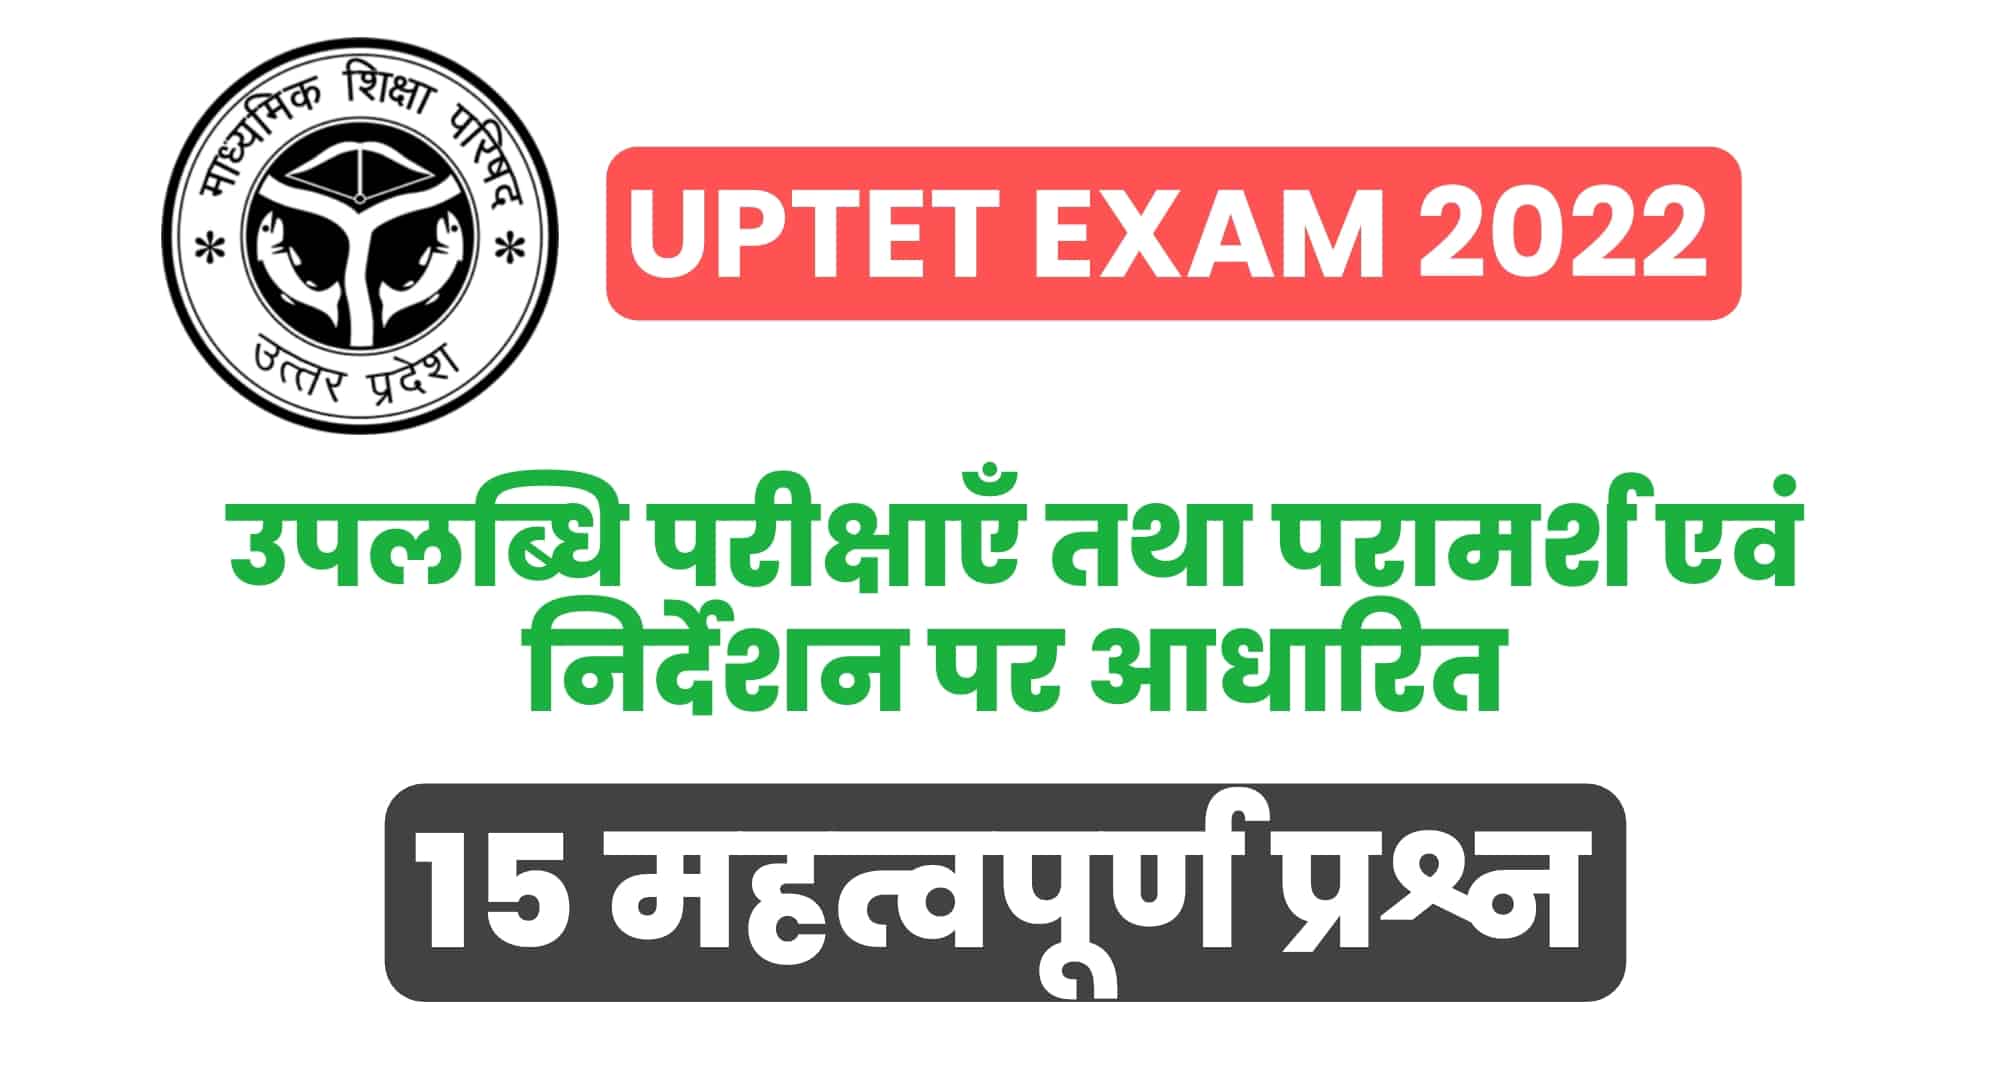 UPTET Exam 2022 : (बाल विकास) उपलब्धि परीक्षाएँ तथा परामर्श एवं निर्देशन पर आधारित 15 महत्वपूर्ण प्रश्न